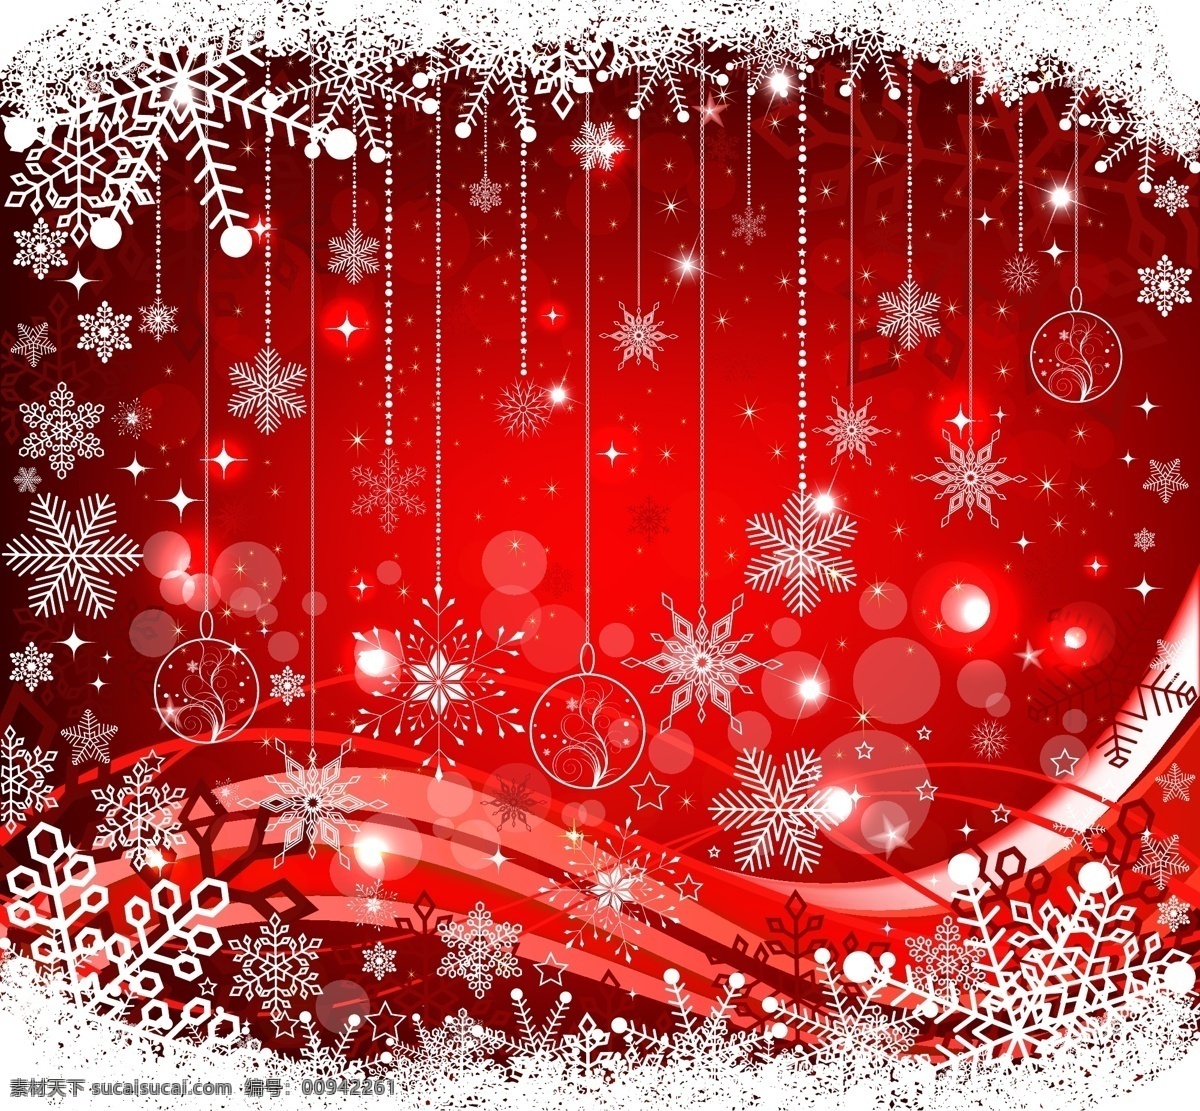 精美 圣诞球 背景 矢量 插图 镜头 模式 球 圣诞节 圣诞树 雪 精美的 流动的线条 矢量图 花纹花边